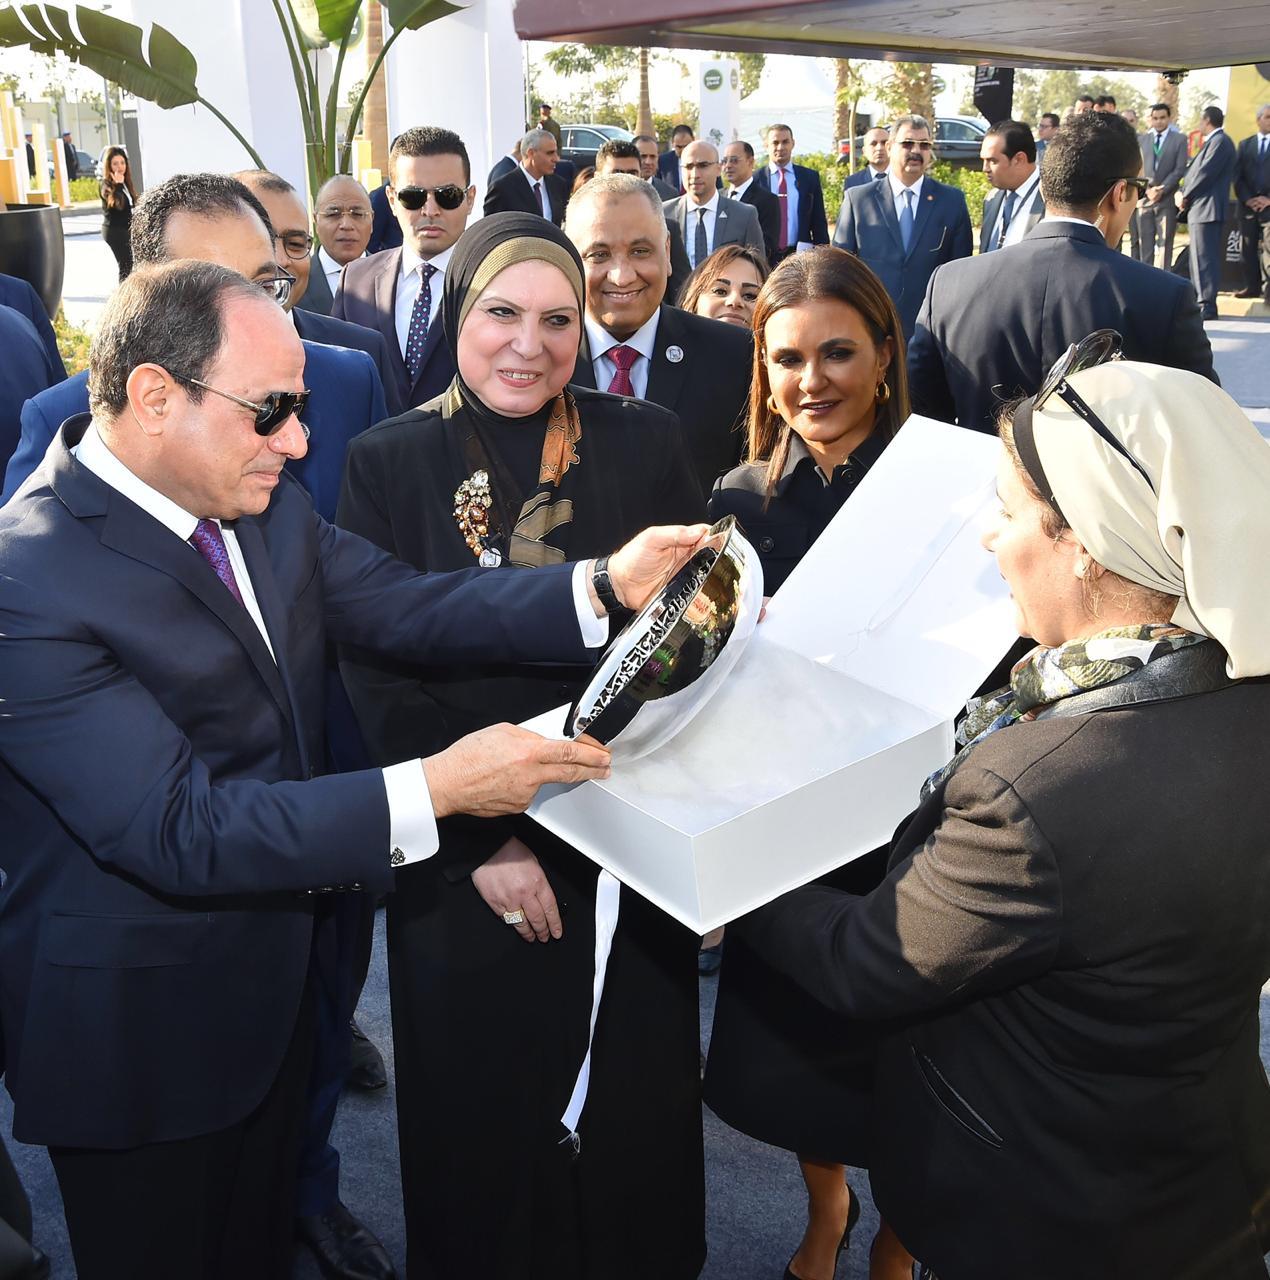 الرئيس السيسي يتفقد معرض تحيا مصر وريادة الاعمال بالعاصمة الادارية الجديدة 